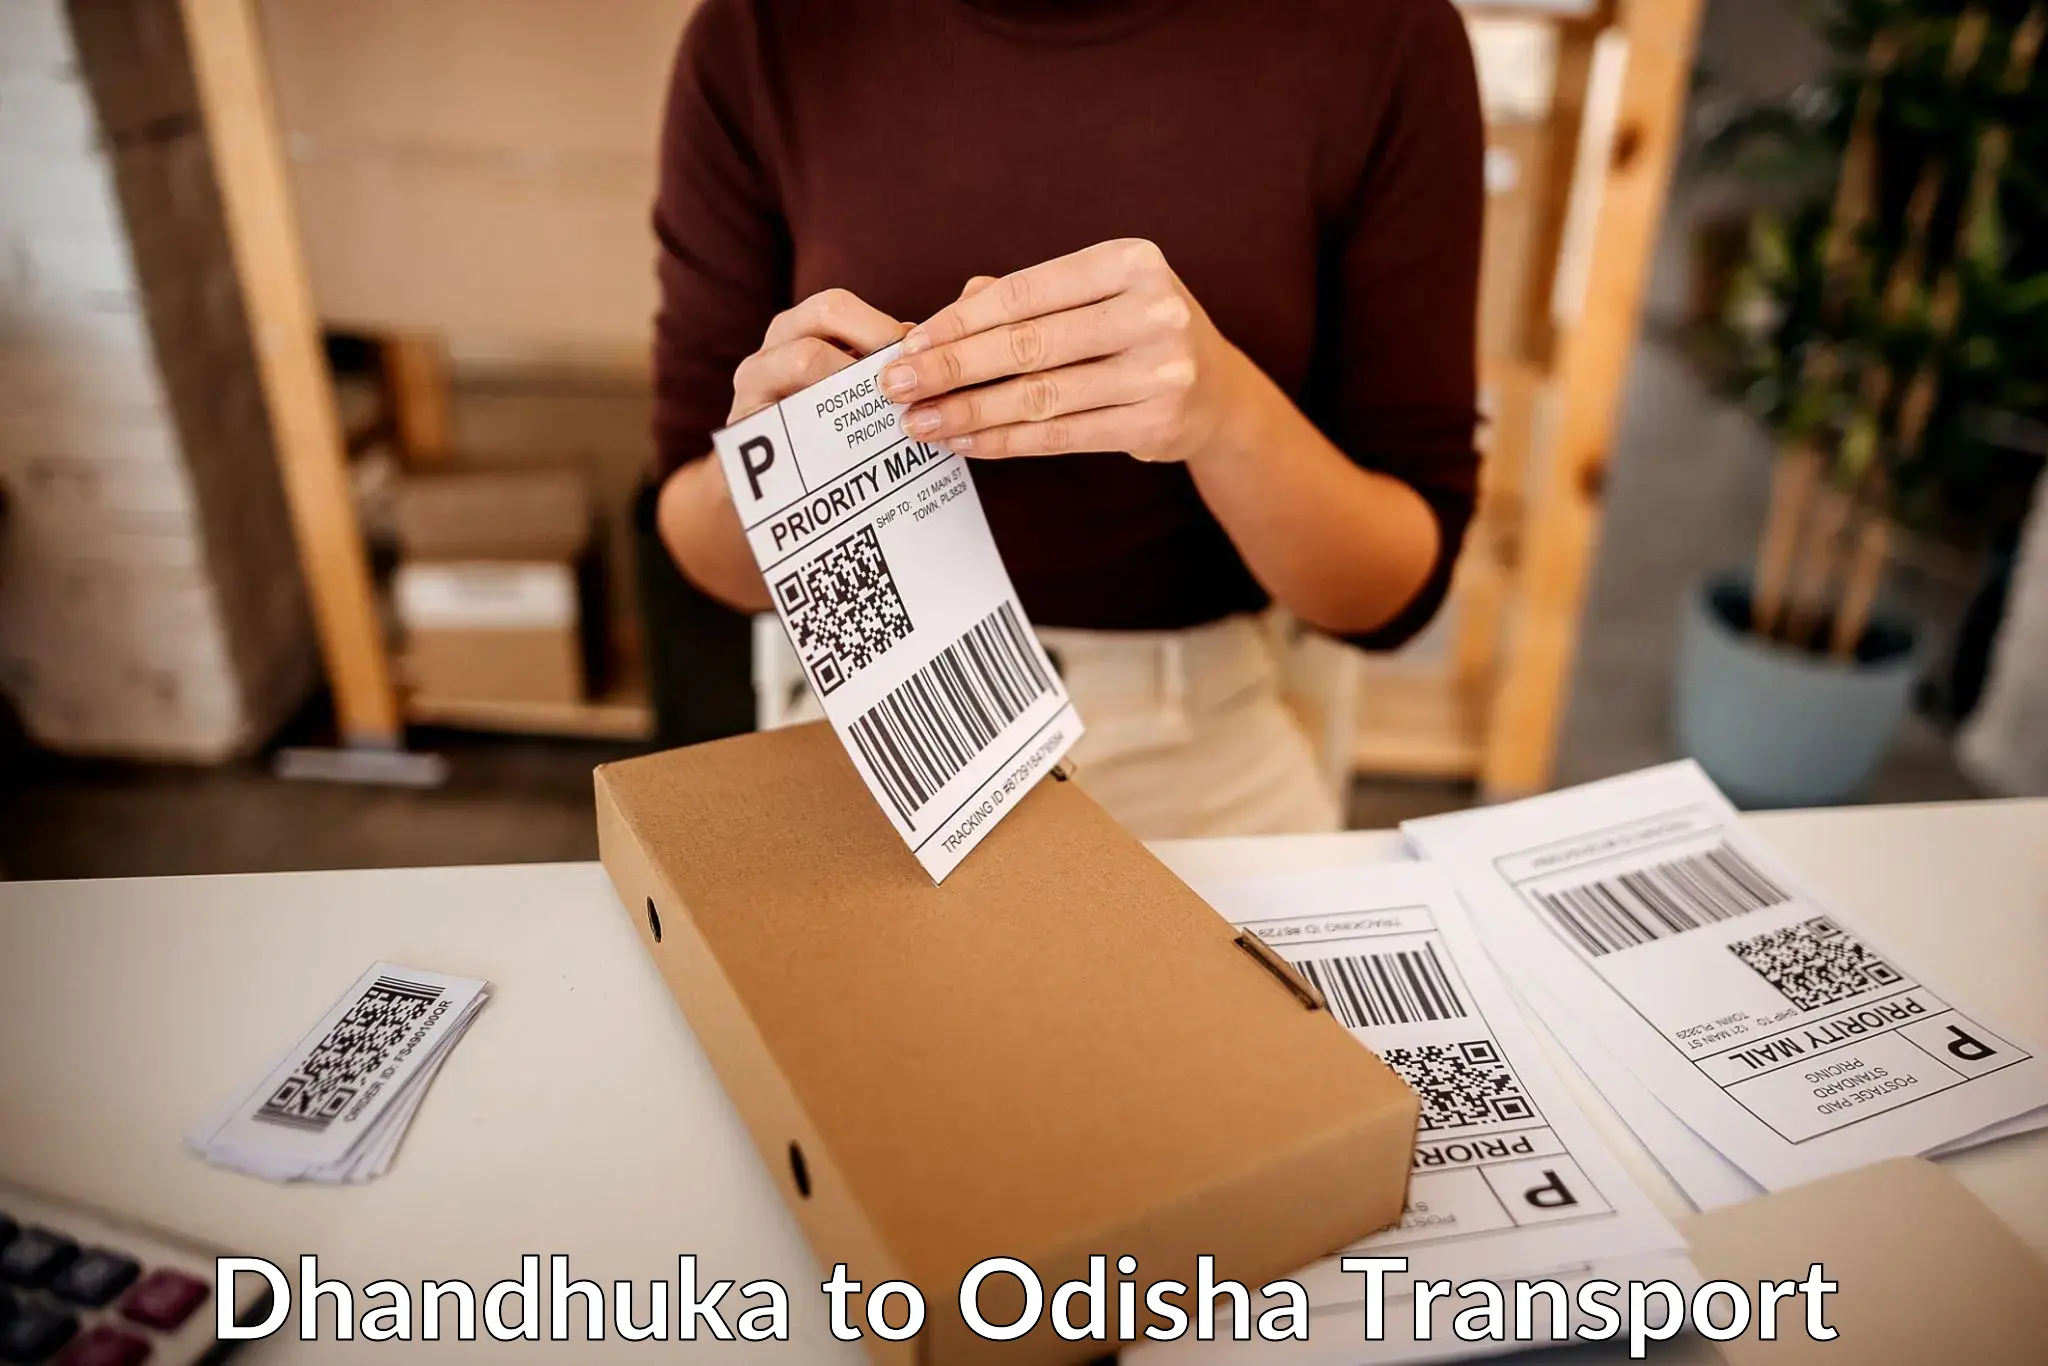 Furniture transport service Dhandhuka to Balangir